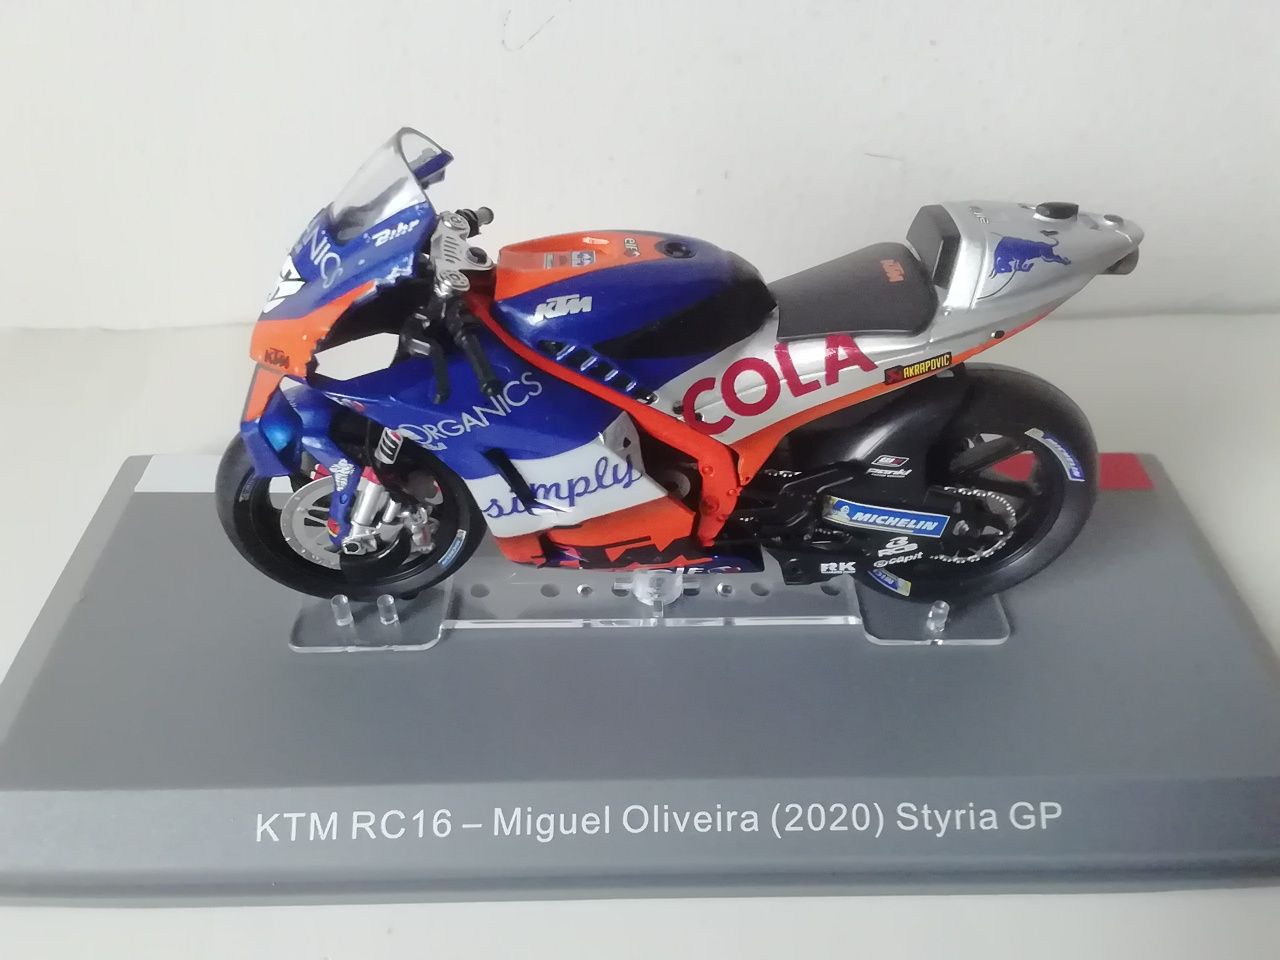 Motas KTM Miguel Oliveira MotoGP 2019, 2020 e 2021